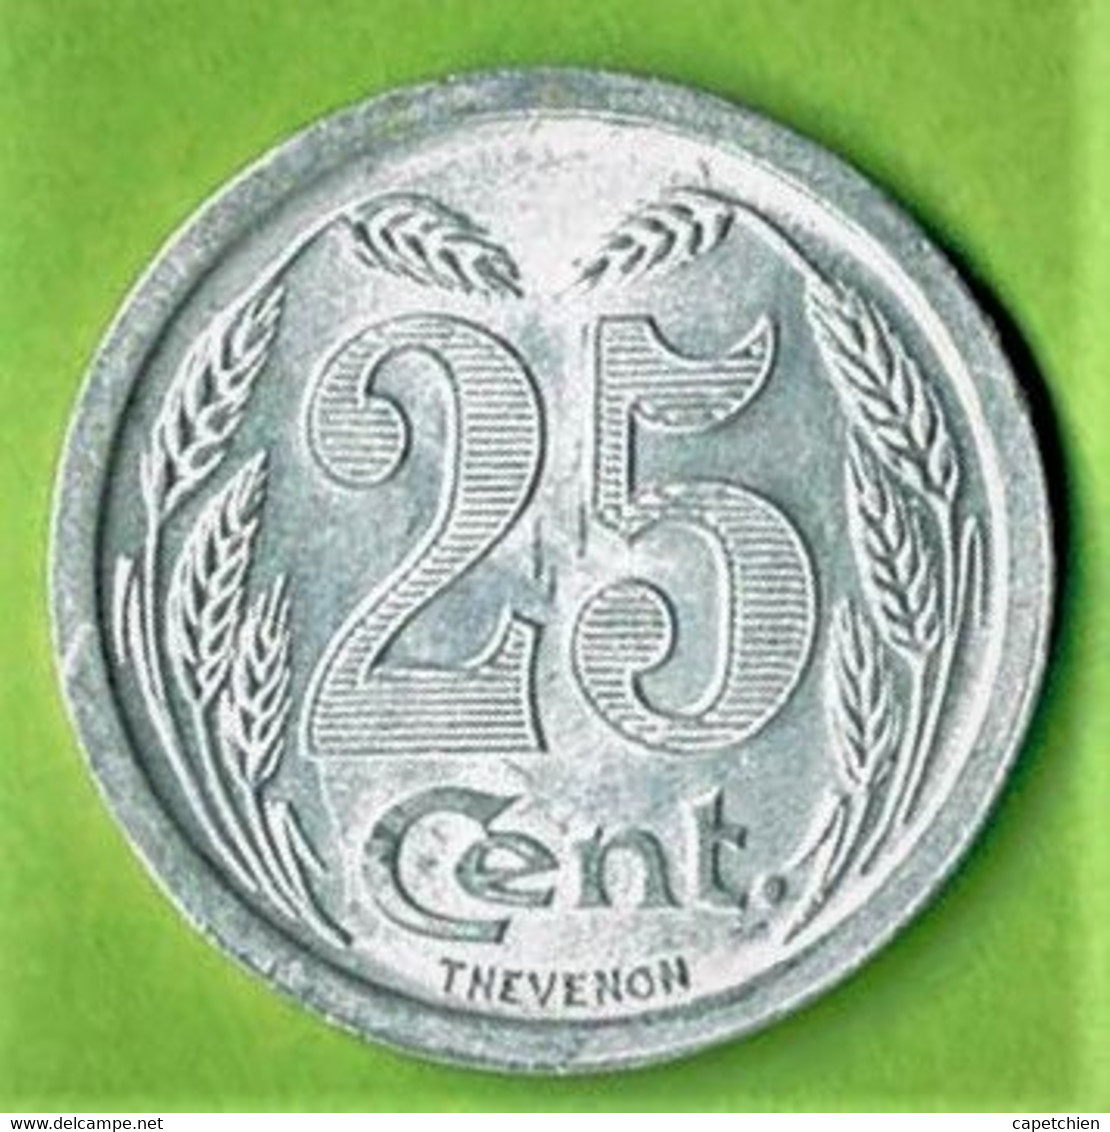 MONNAI DE NECESSITE / CHAMBRE DE COMMERCE EVREUX / 25 CENT./ 1921 / ALU / ETAT SUP. - Monétaires / De Nécessité